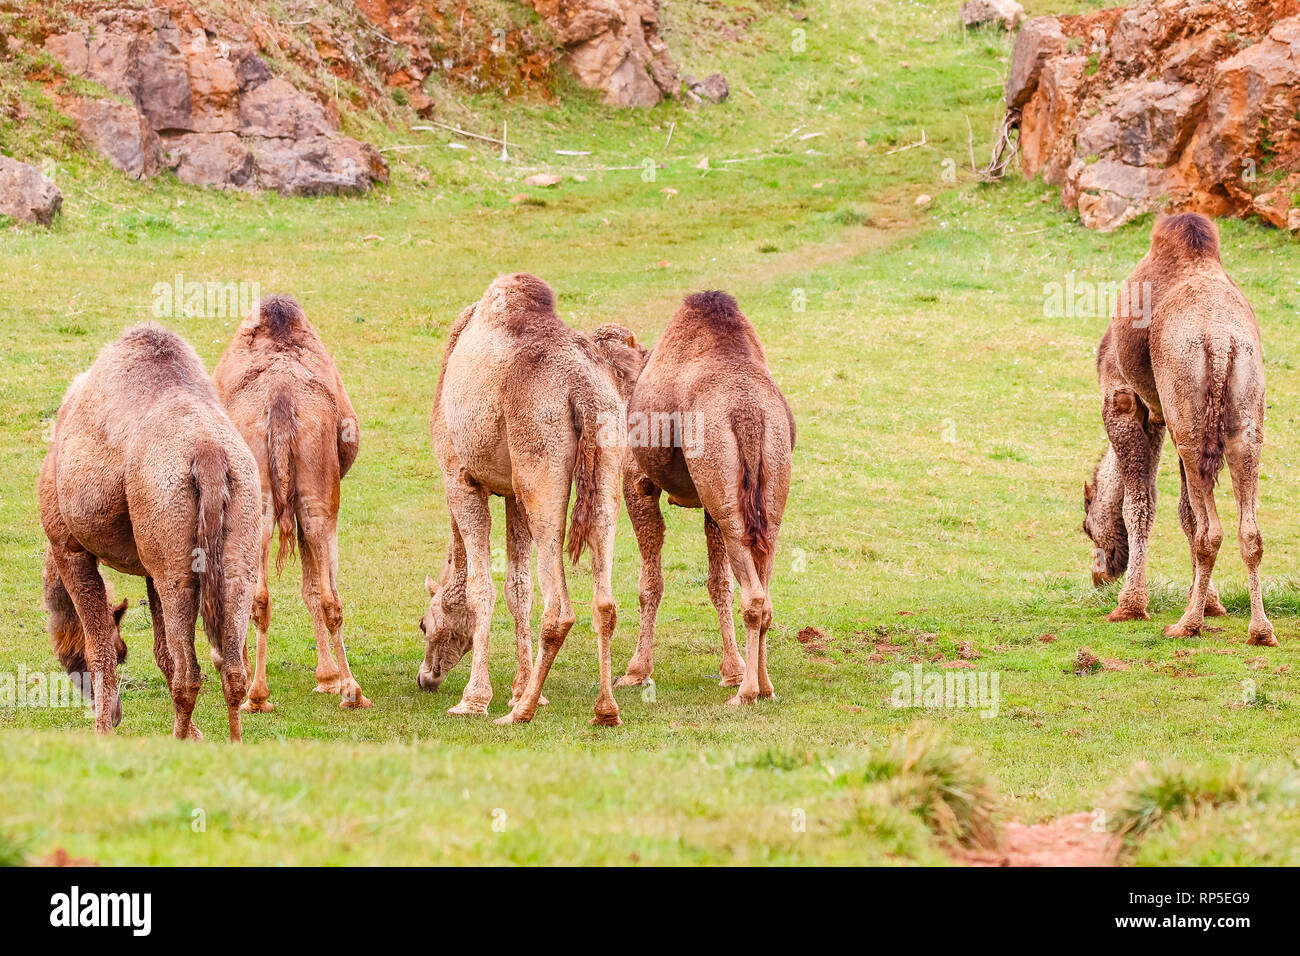 Camel, Dromedary (Camelus dromedarius) Stock Photo